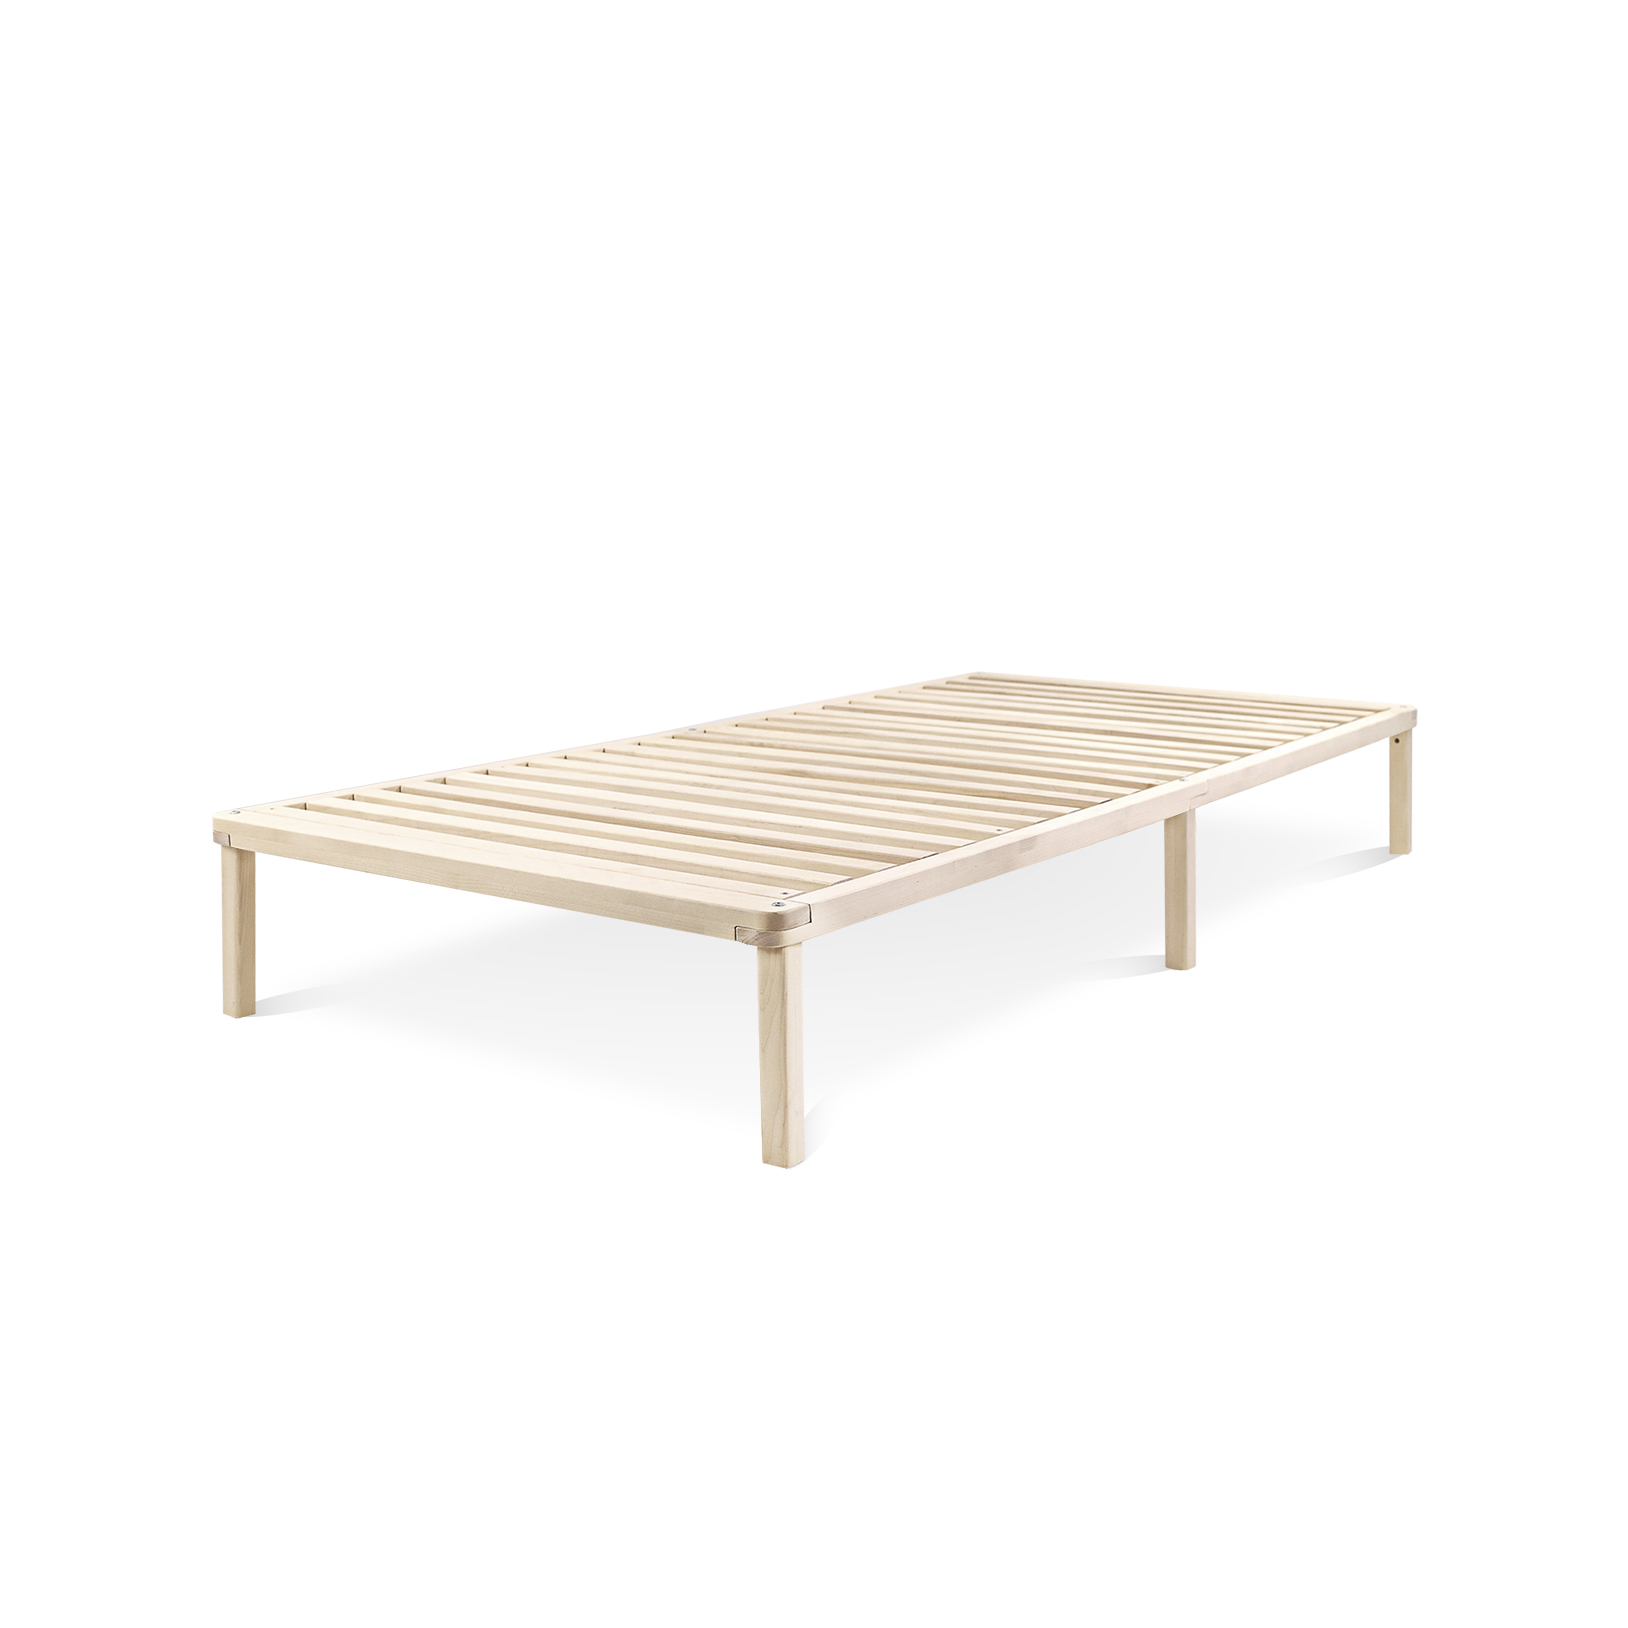 фото Кровать односпальная деревянная hansales 80x200 см из массива берёзы light sleep